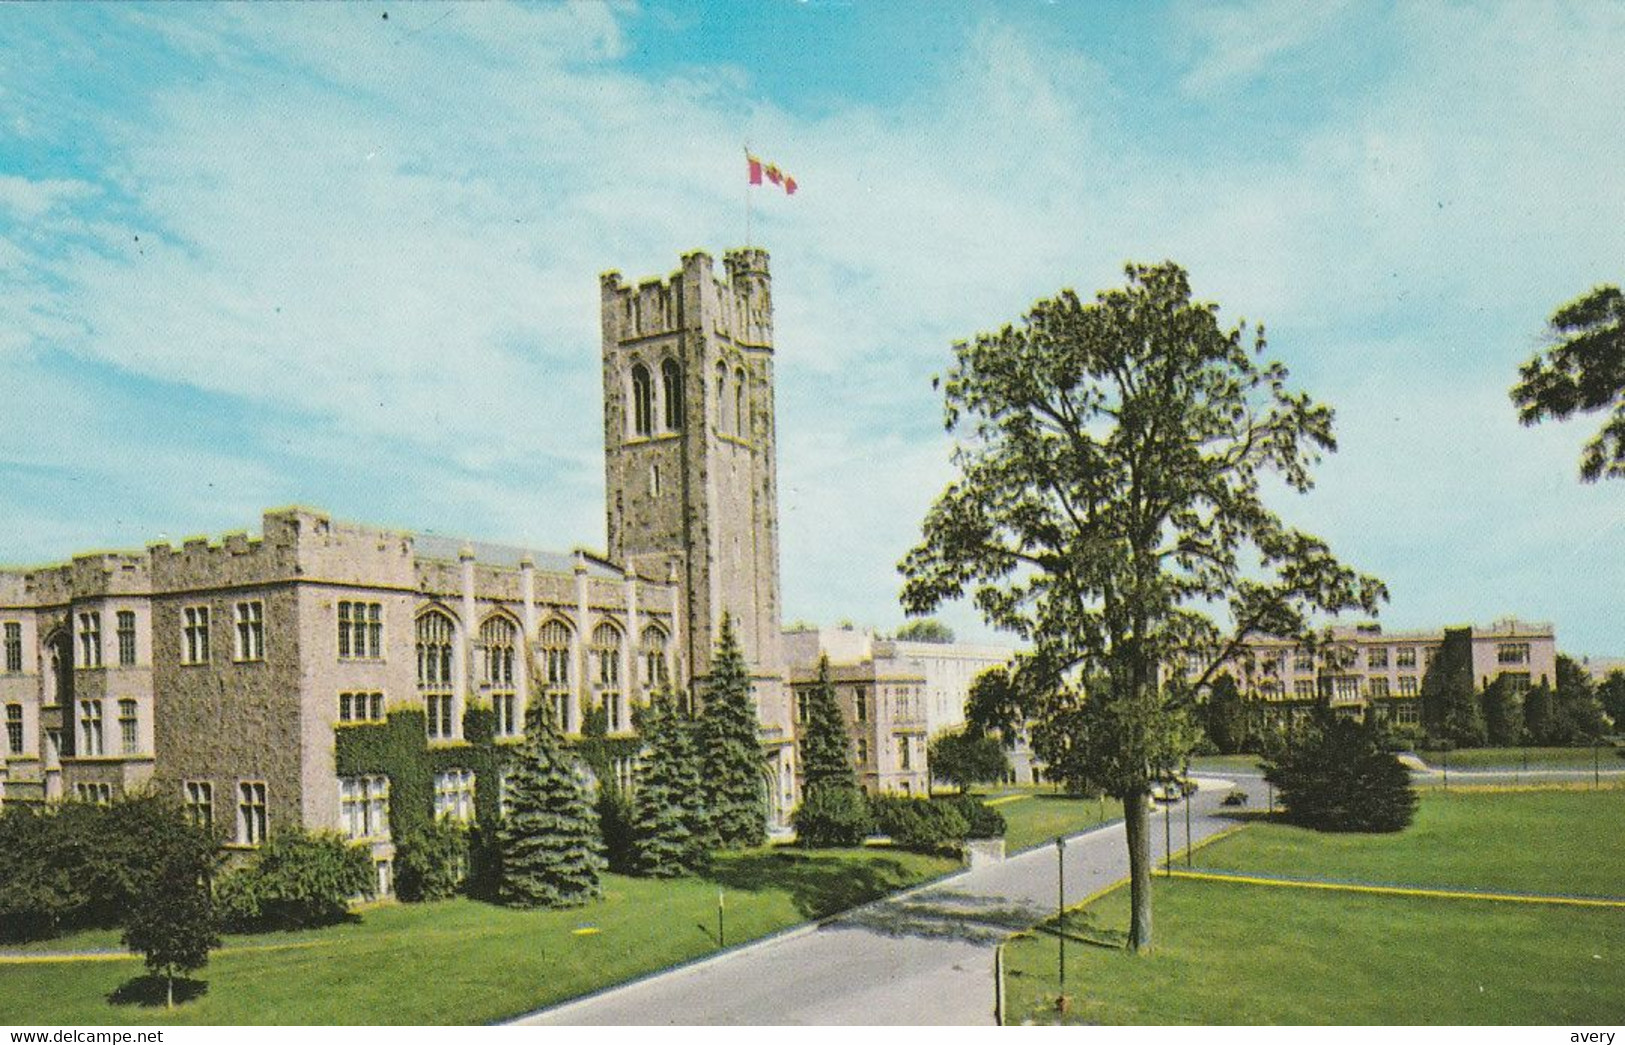 University Of Western Ontario, London, Ontario - London